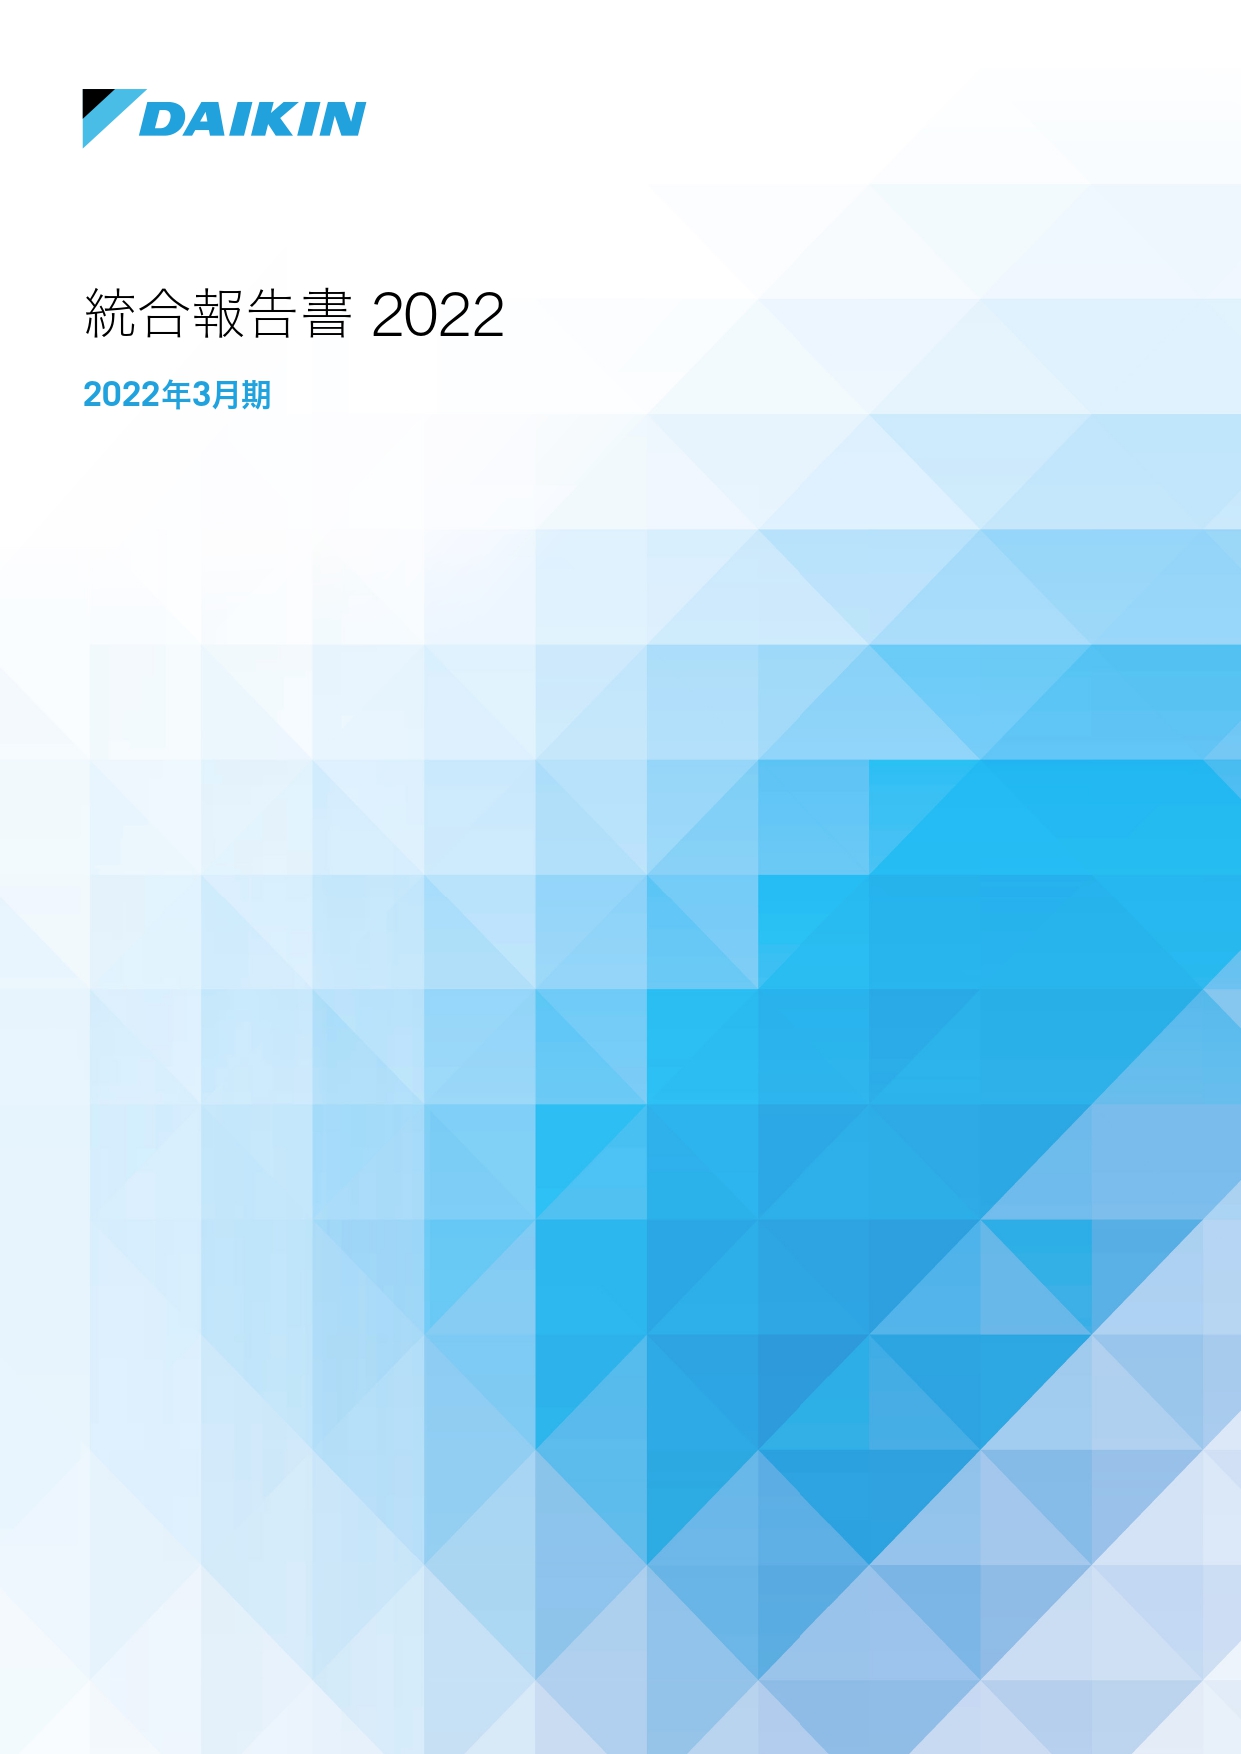 イメージ：統合報告書2022